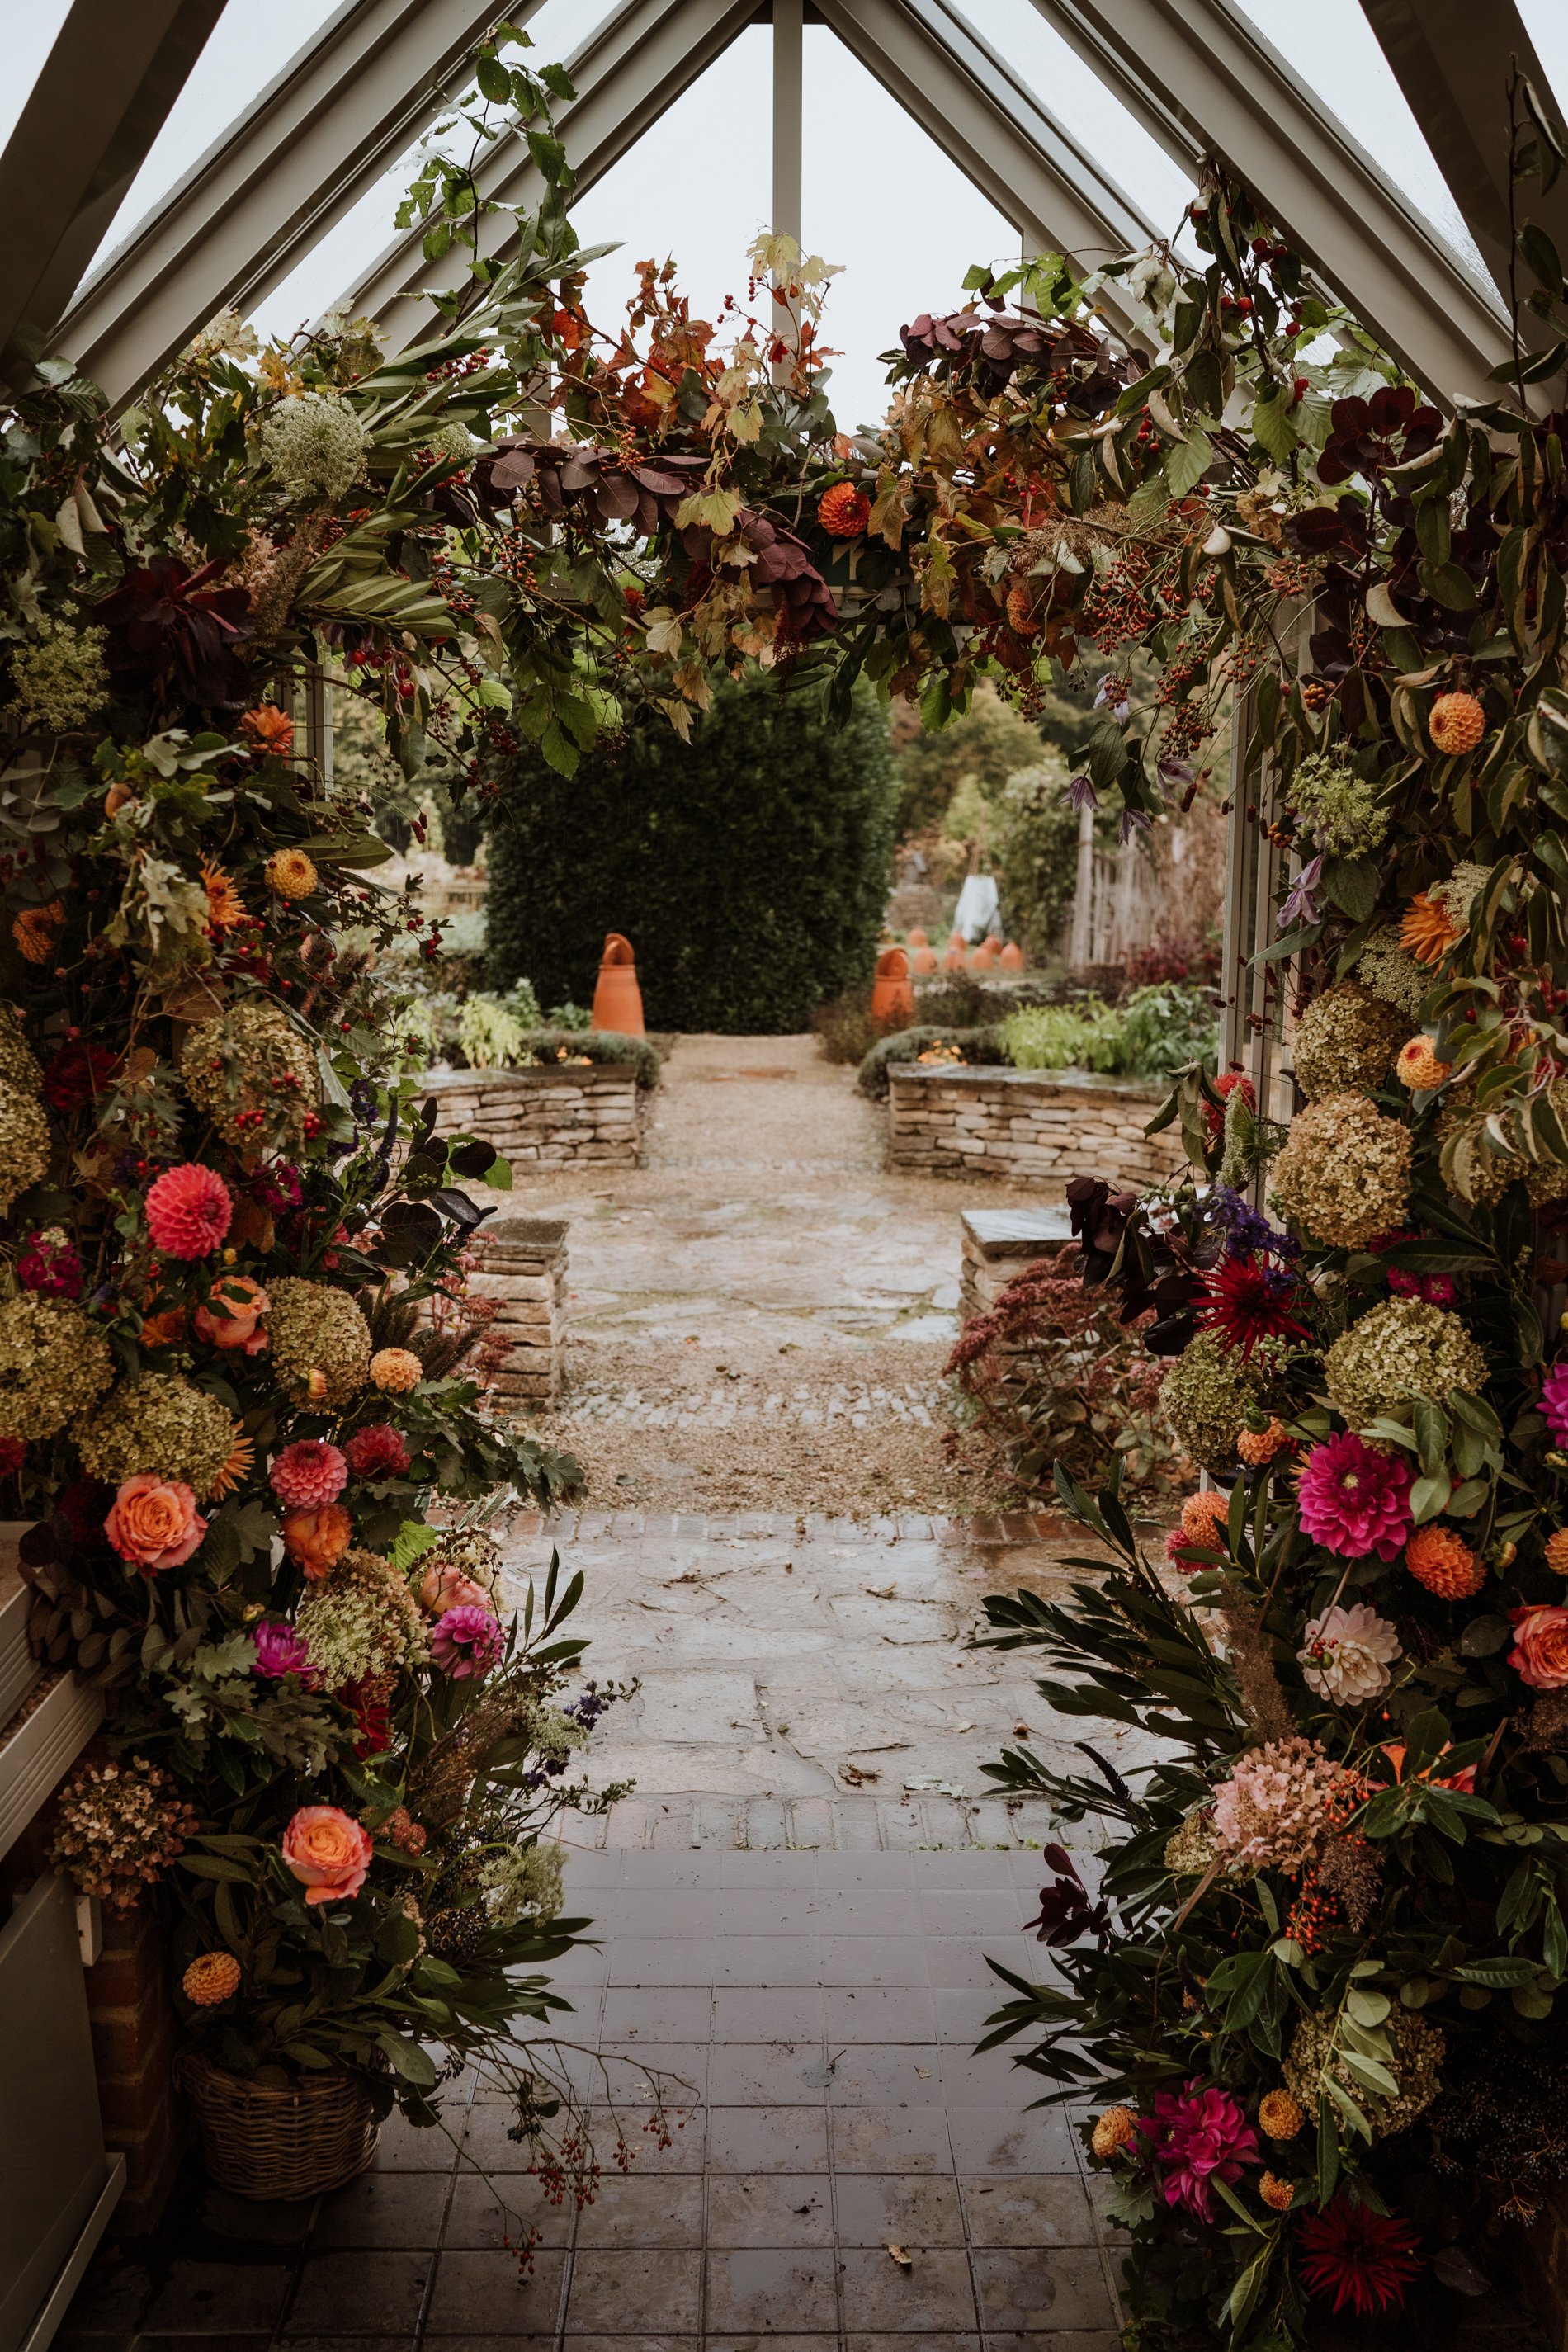 Autumn wedding inspiration at Le Manoir au Quat'Saisons Oxfordshire